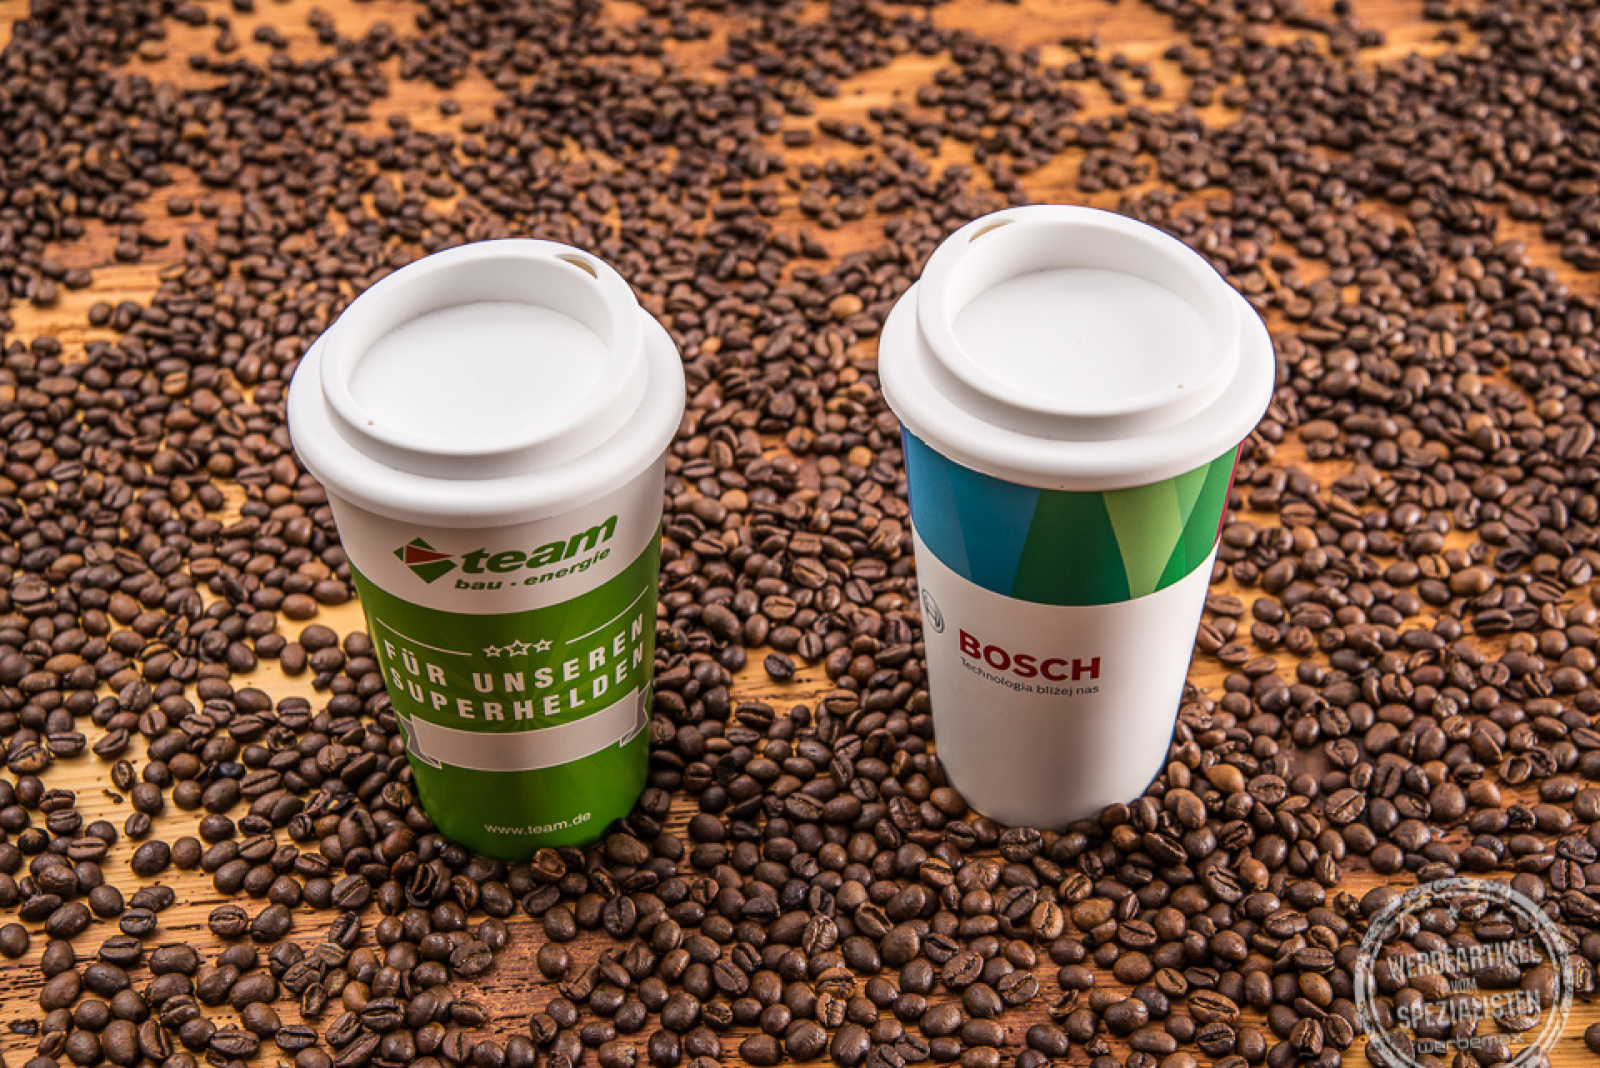 Premium Kaffee Becher als Alternative zu bedruckten Einwegbechern